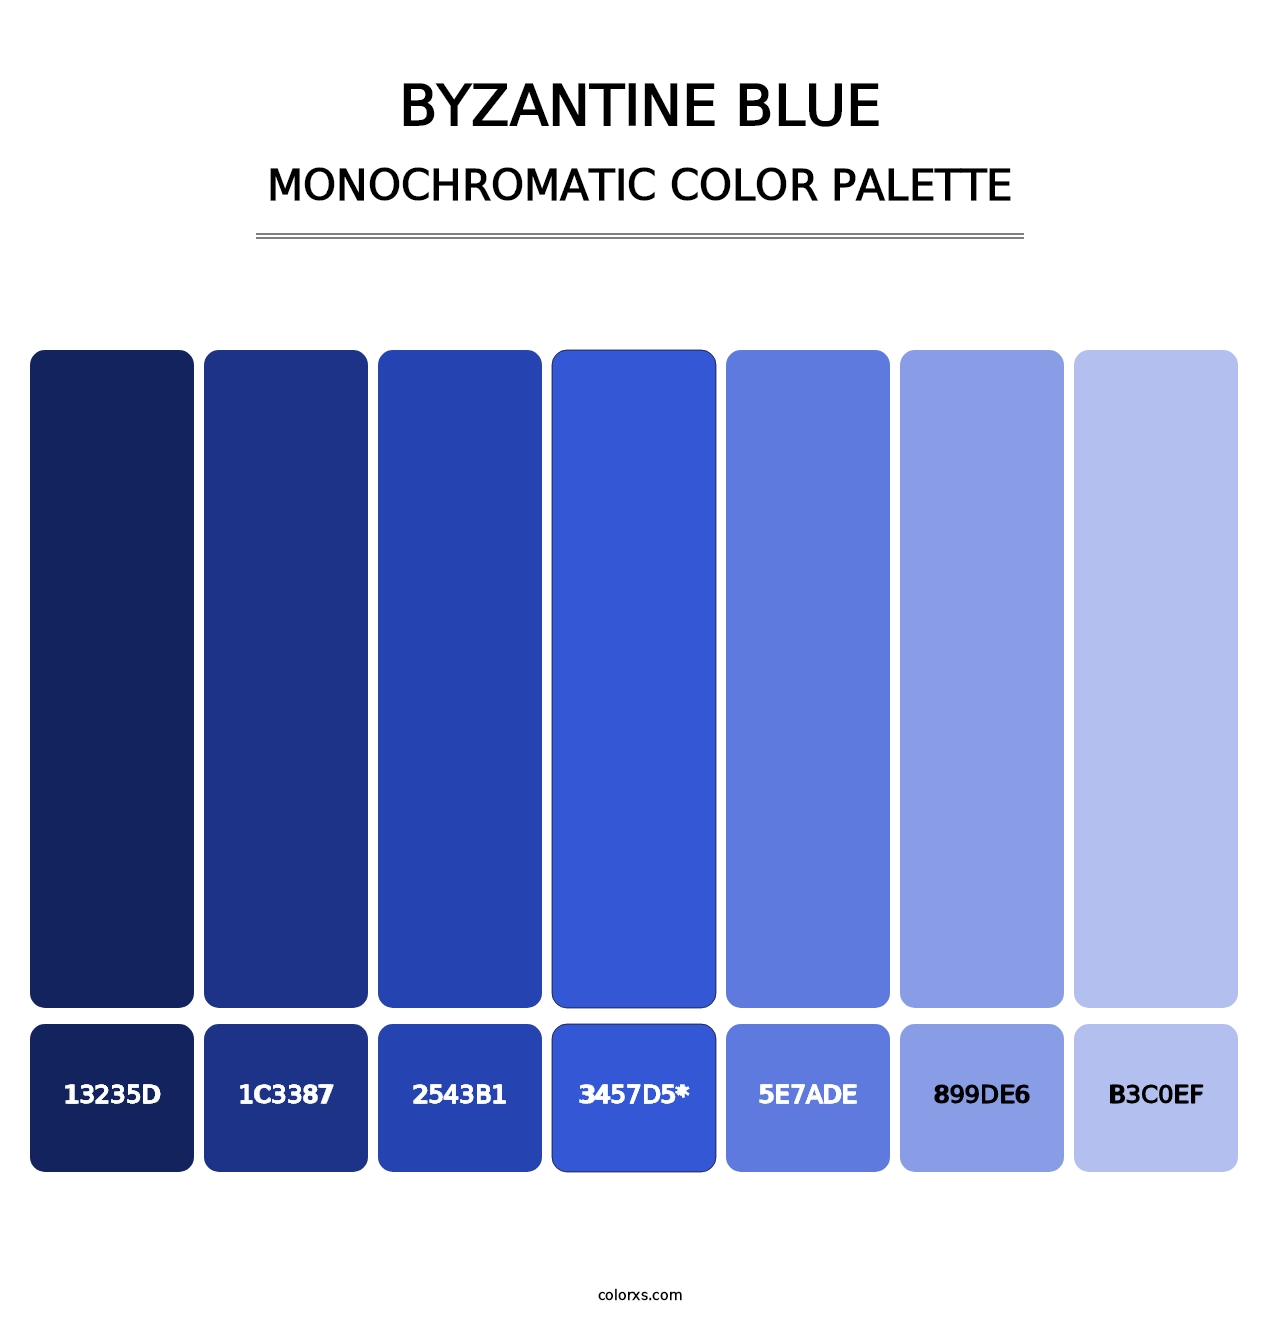 Byzantine Blue - Monochromatic Color Palette